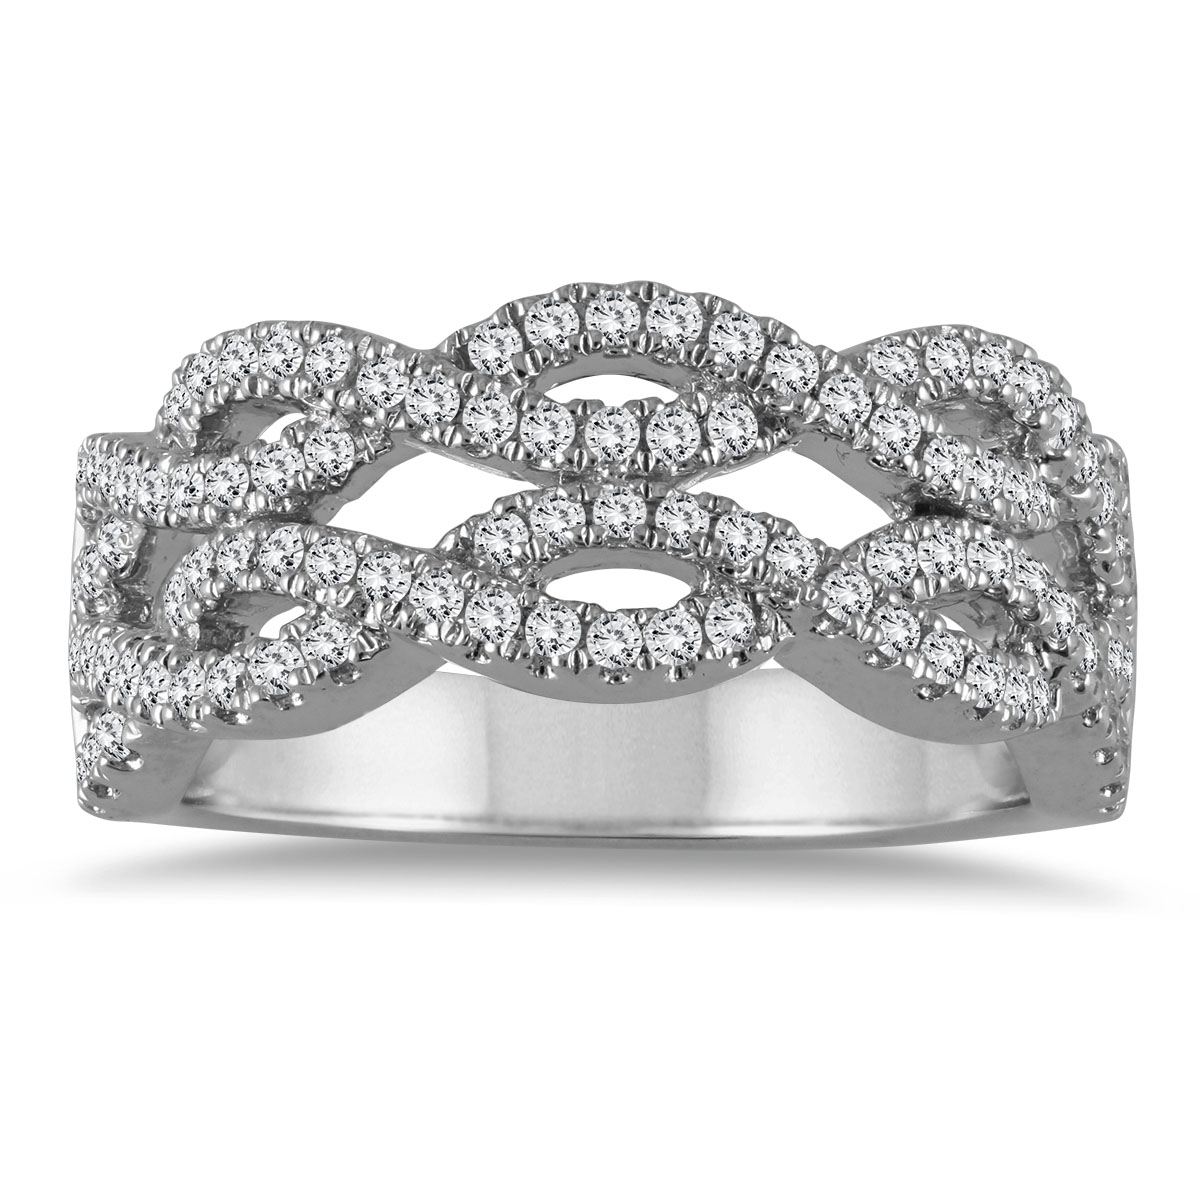 5/8 Carat TW Diamond Fashion Ring in 10K White Gold